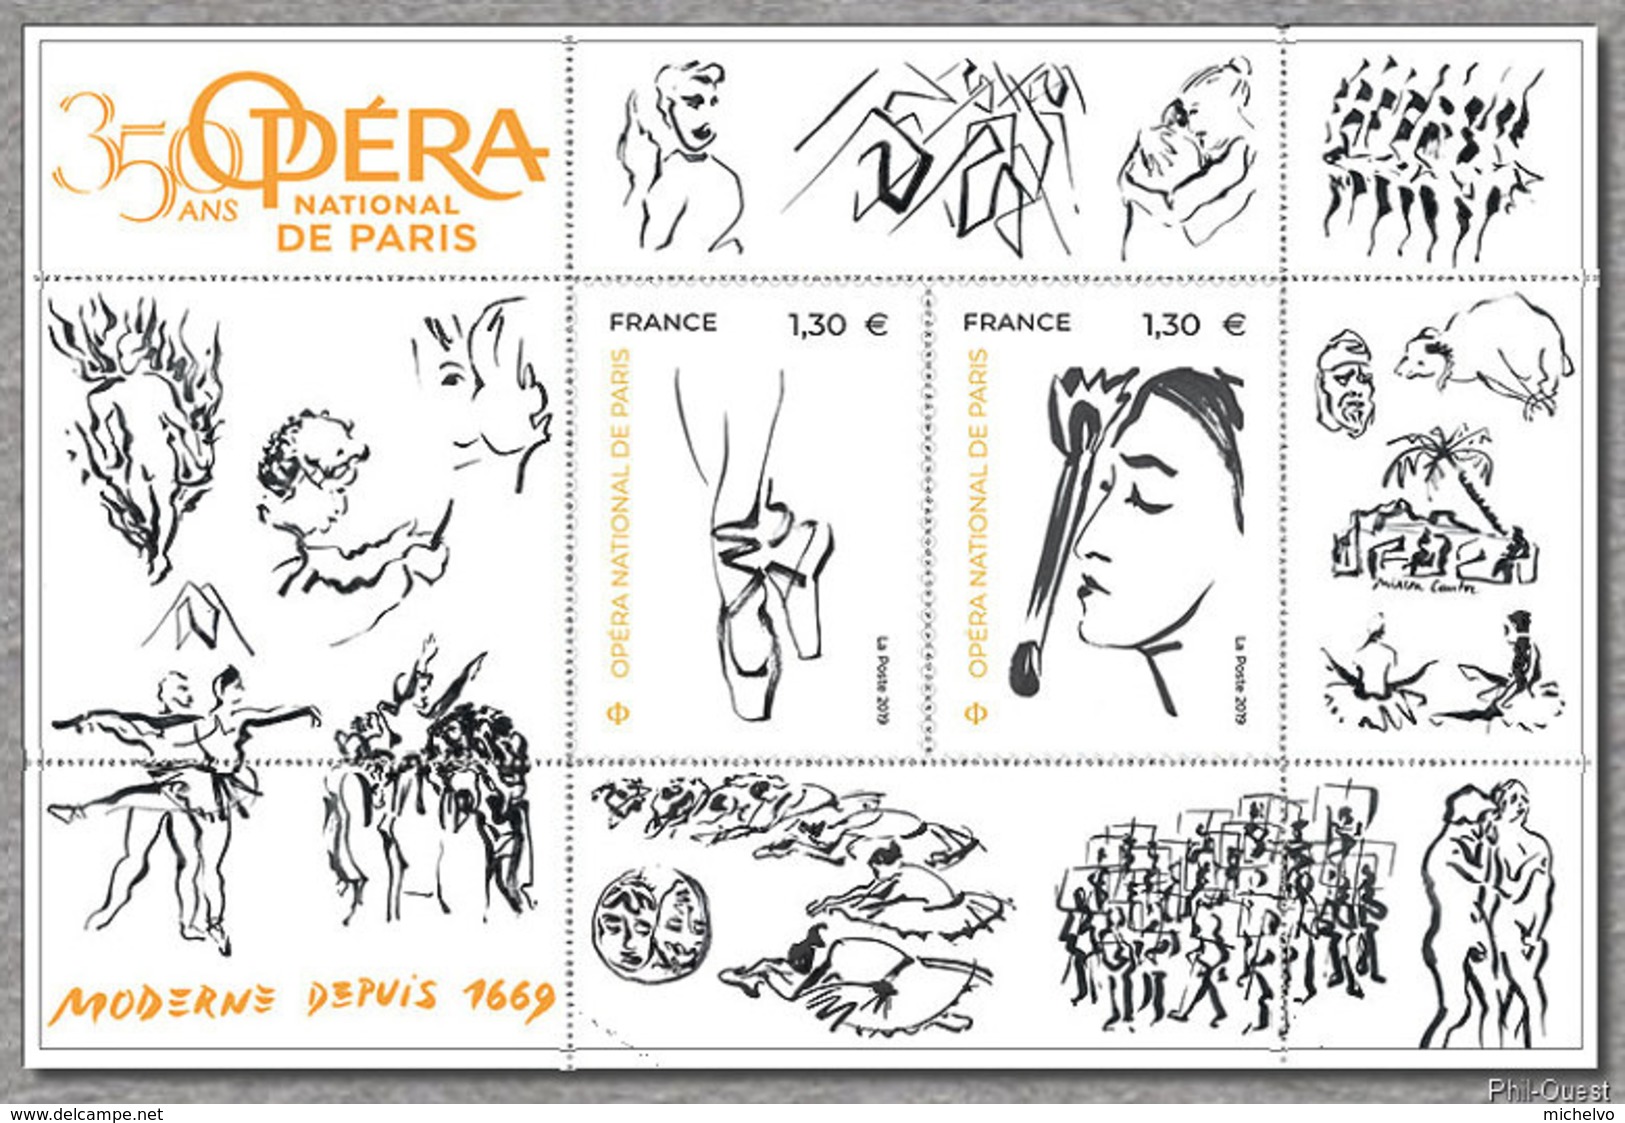 France 2019 - Opéra National De Paris 350 Ans - Unused Stamps